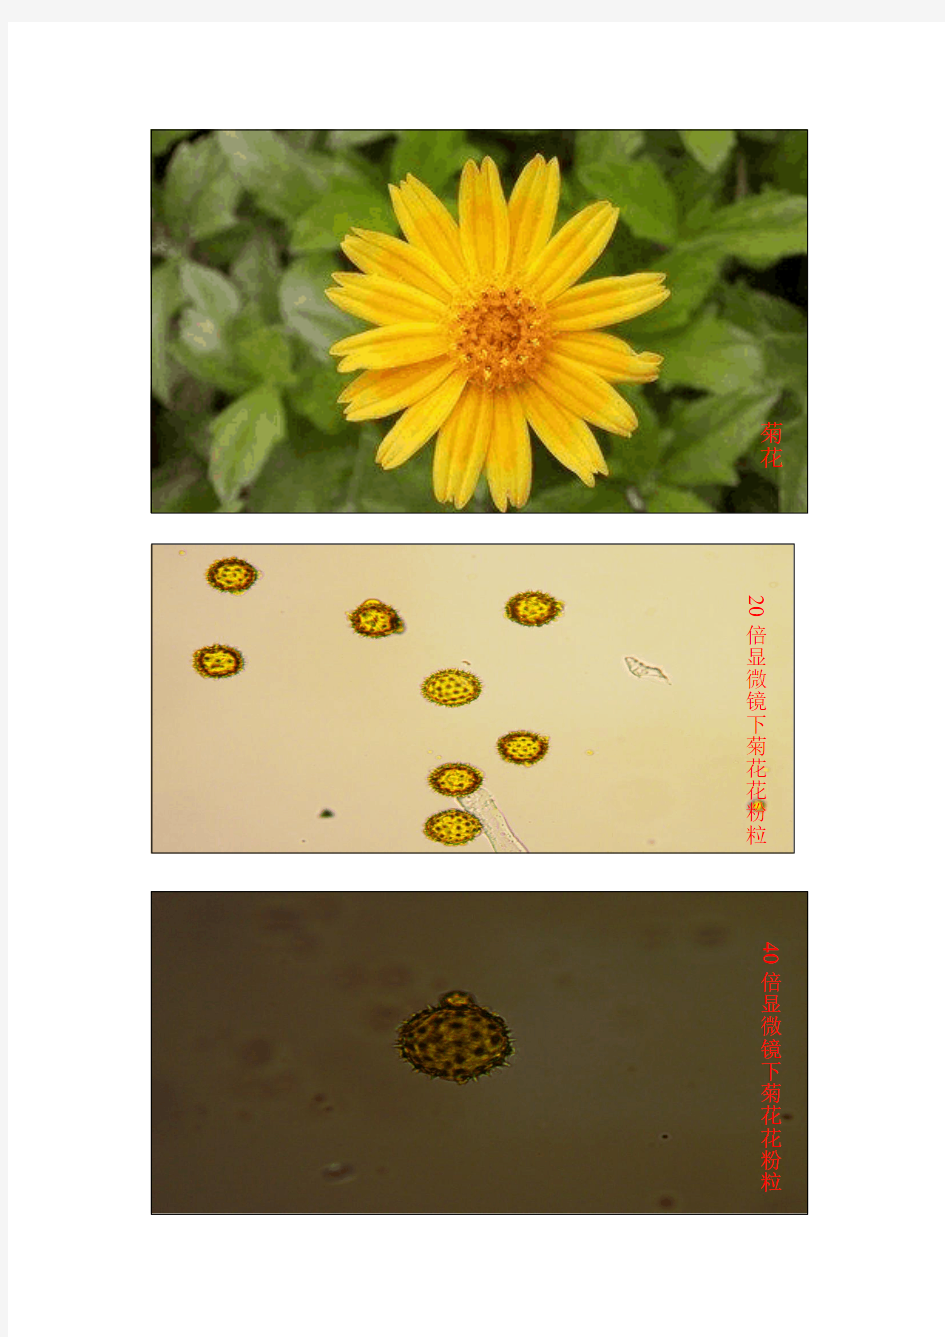 菊花及其花粉粒形态